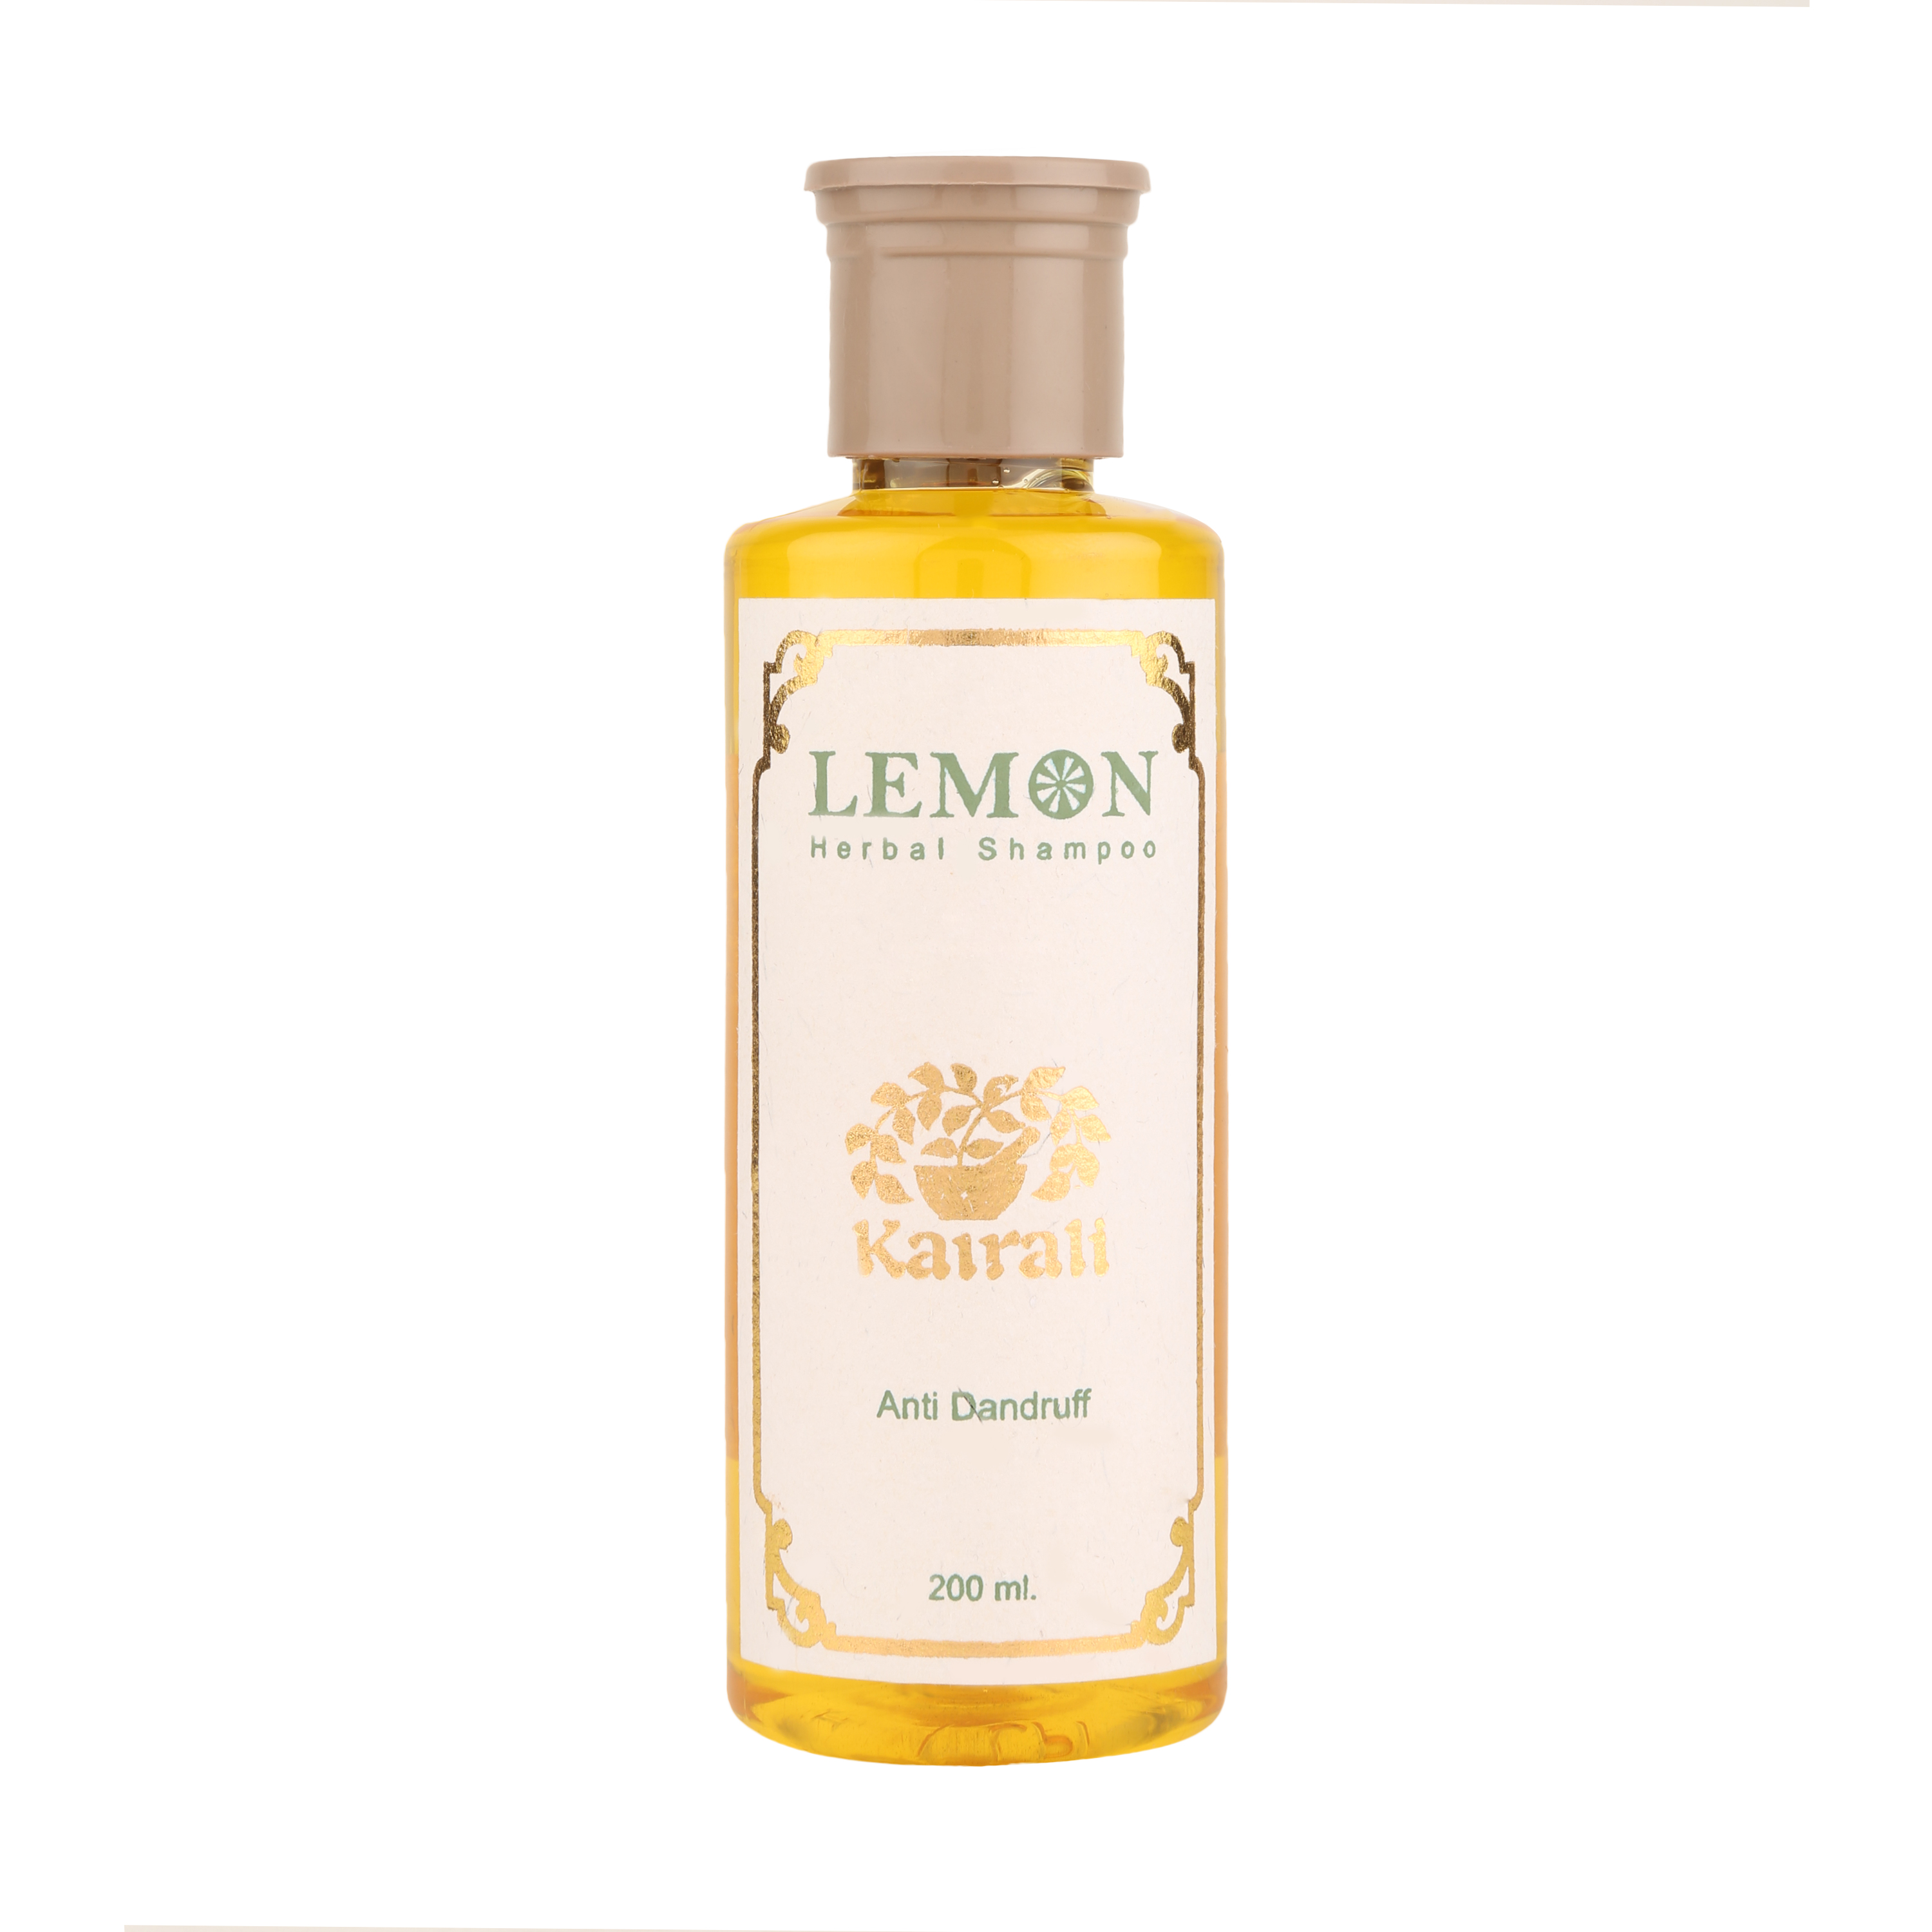 Buy Kairali Lemon Shampoo at Best Price Online